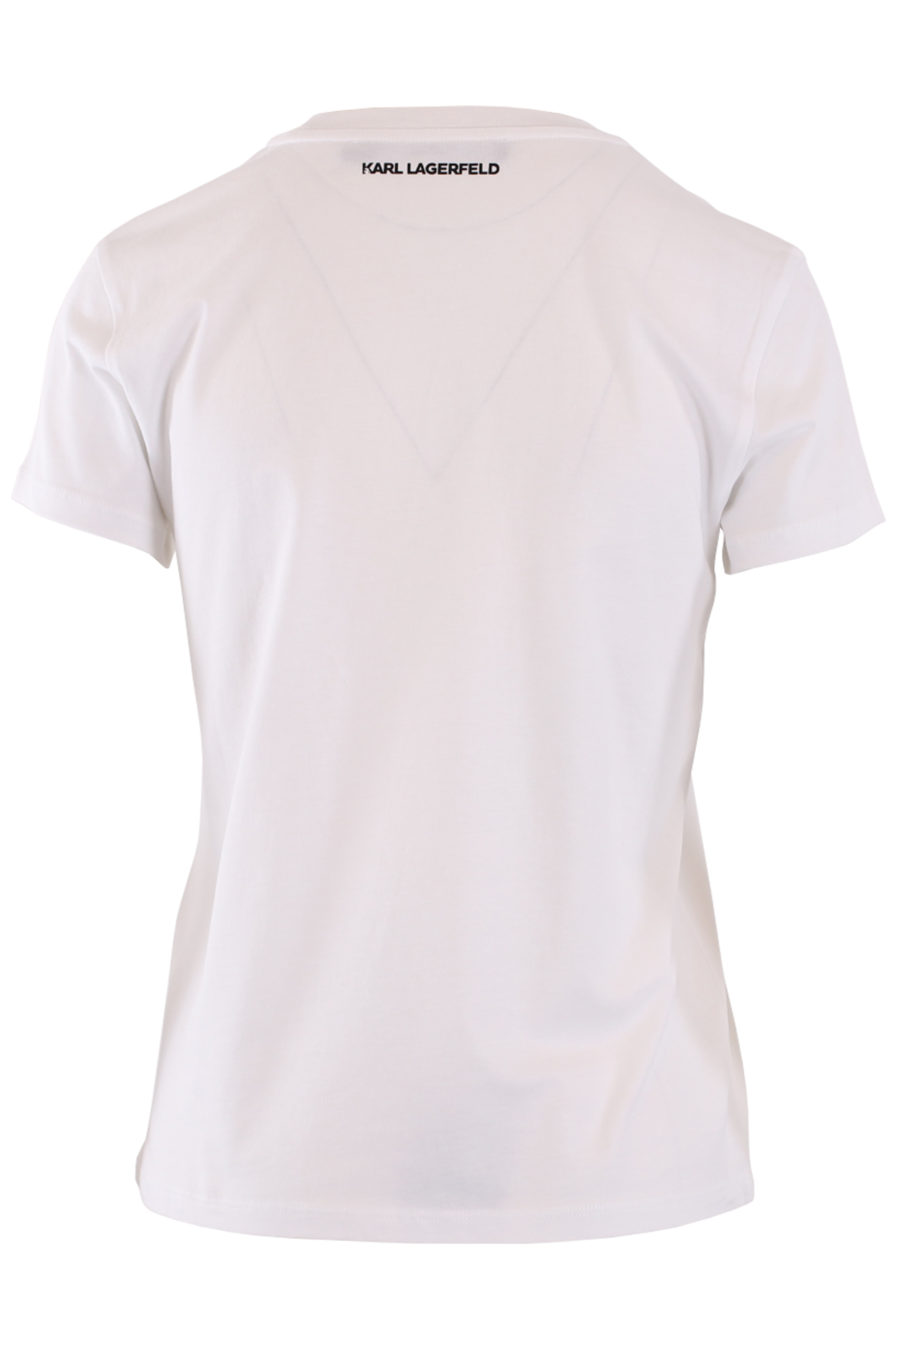 Camiseta blanca con logo de cebra - IMG 8960